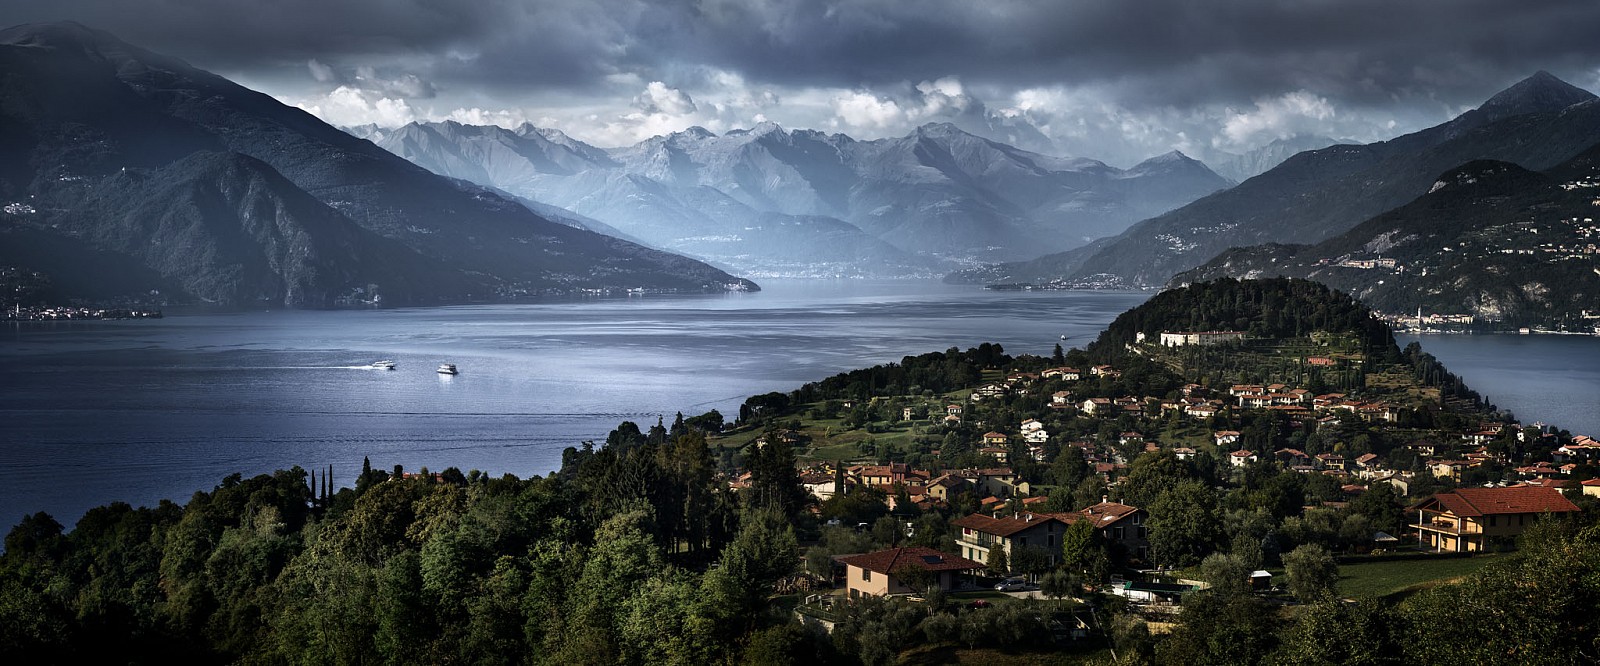 David Drebin, Escape to Lake Como, 2012
Digital C Print, 20 x 48 inches; 30 x 72 inches; 40 x 96 inches